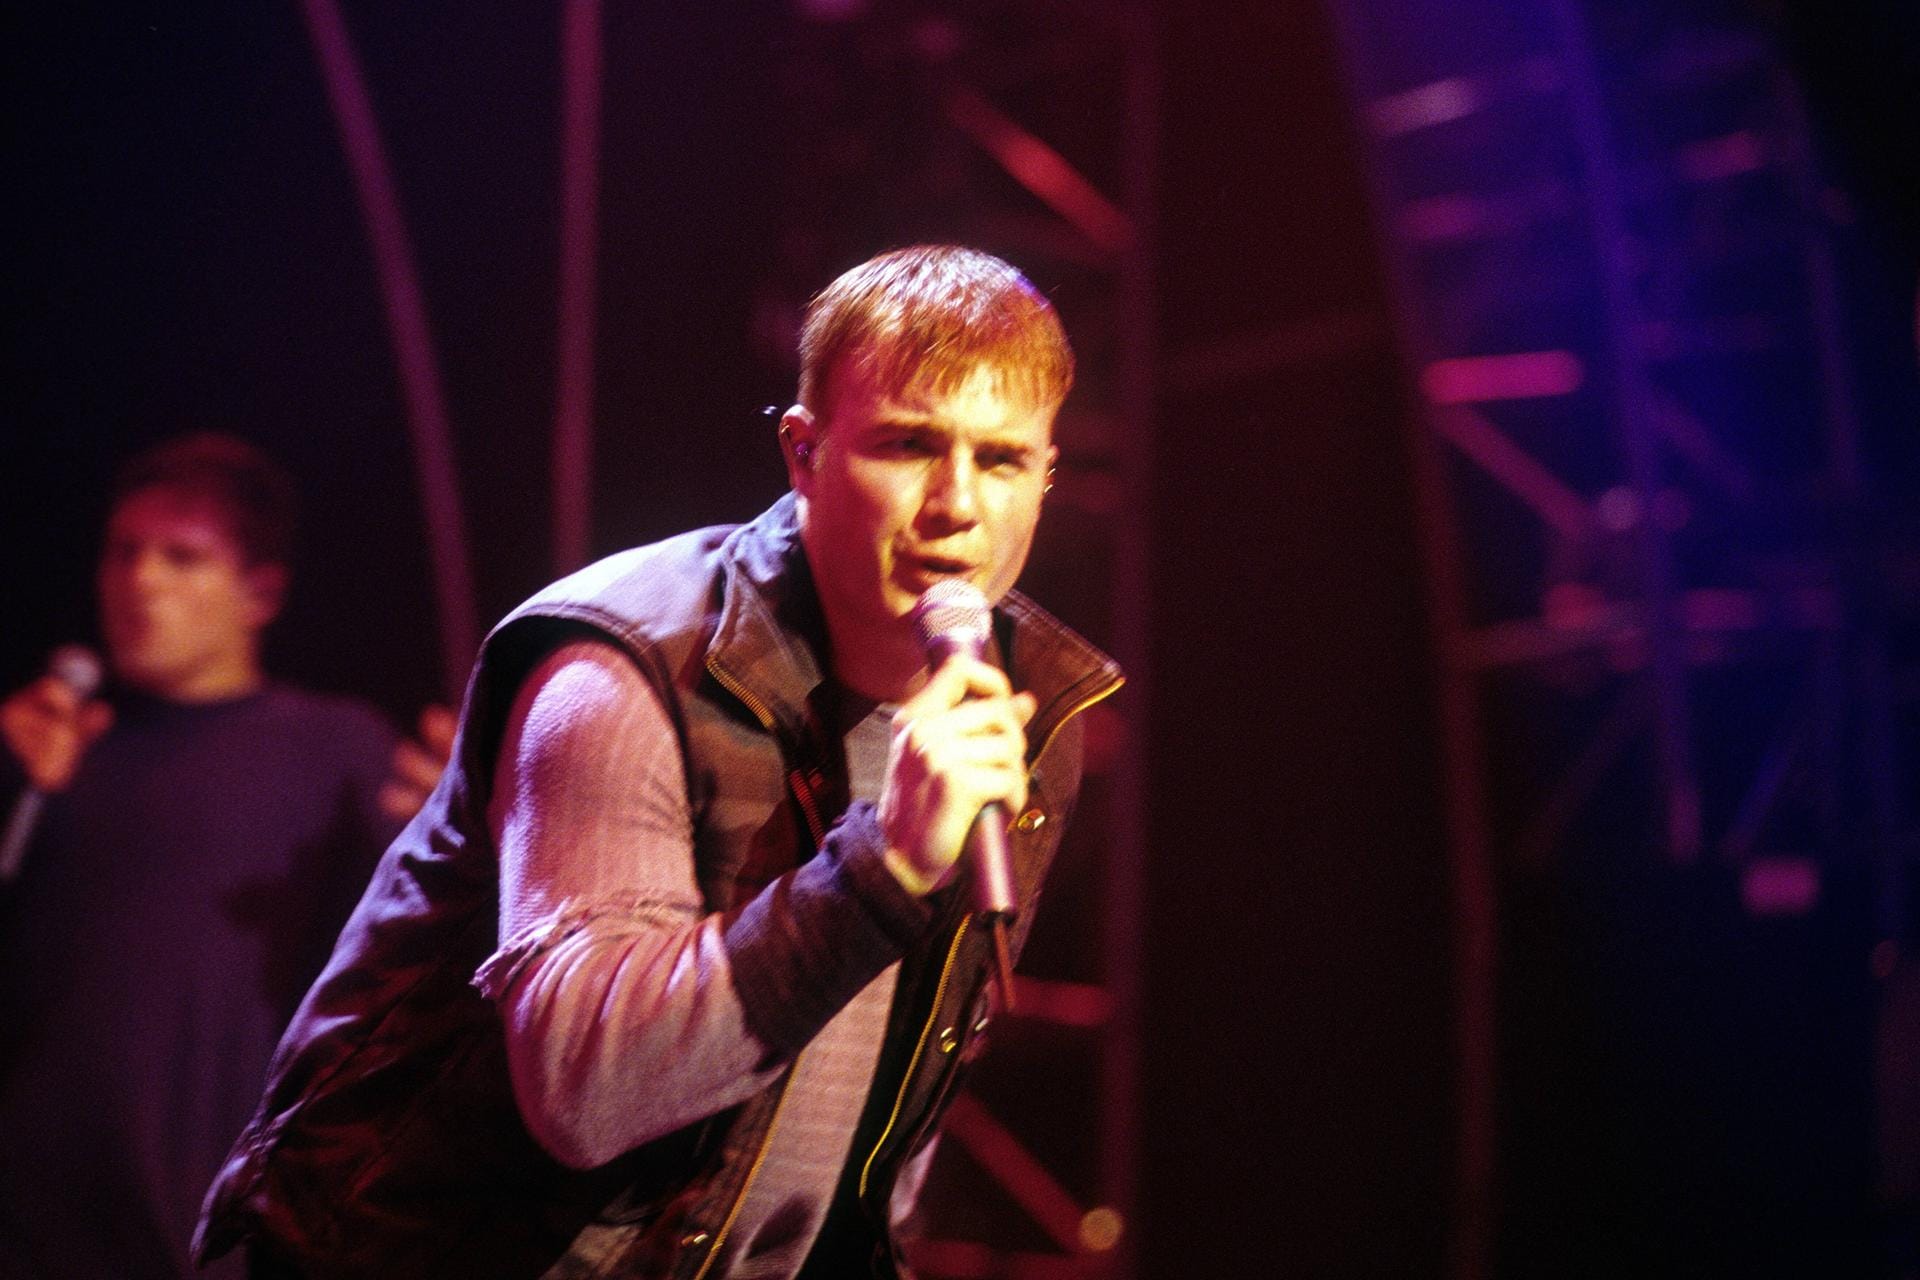 Boyband-Mitglied: Als Sänger bei Take That startete Gary Barlow seine Karriere.